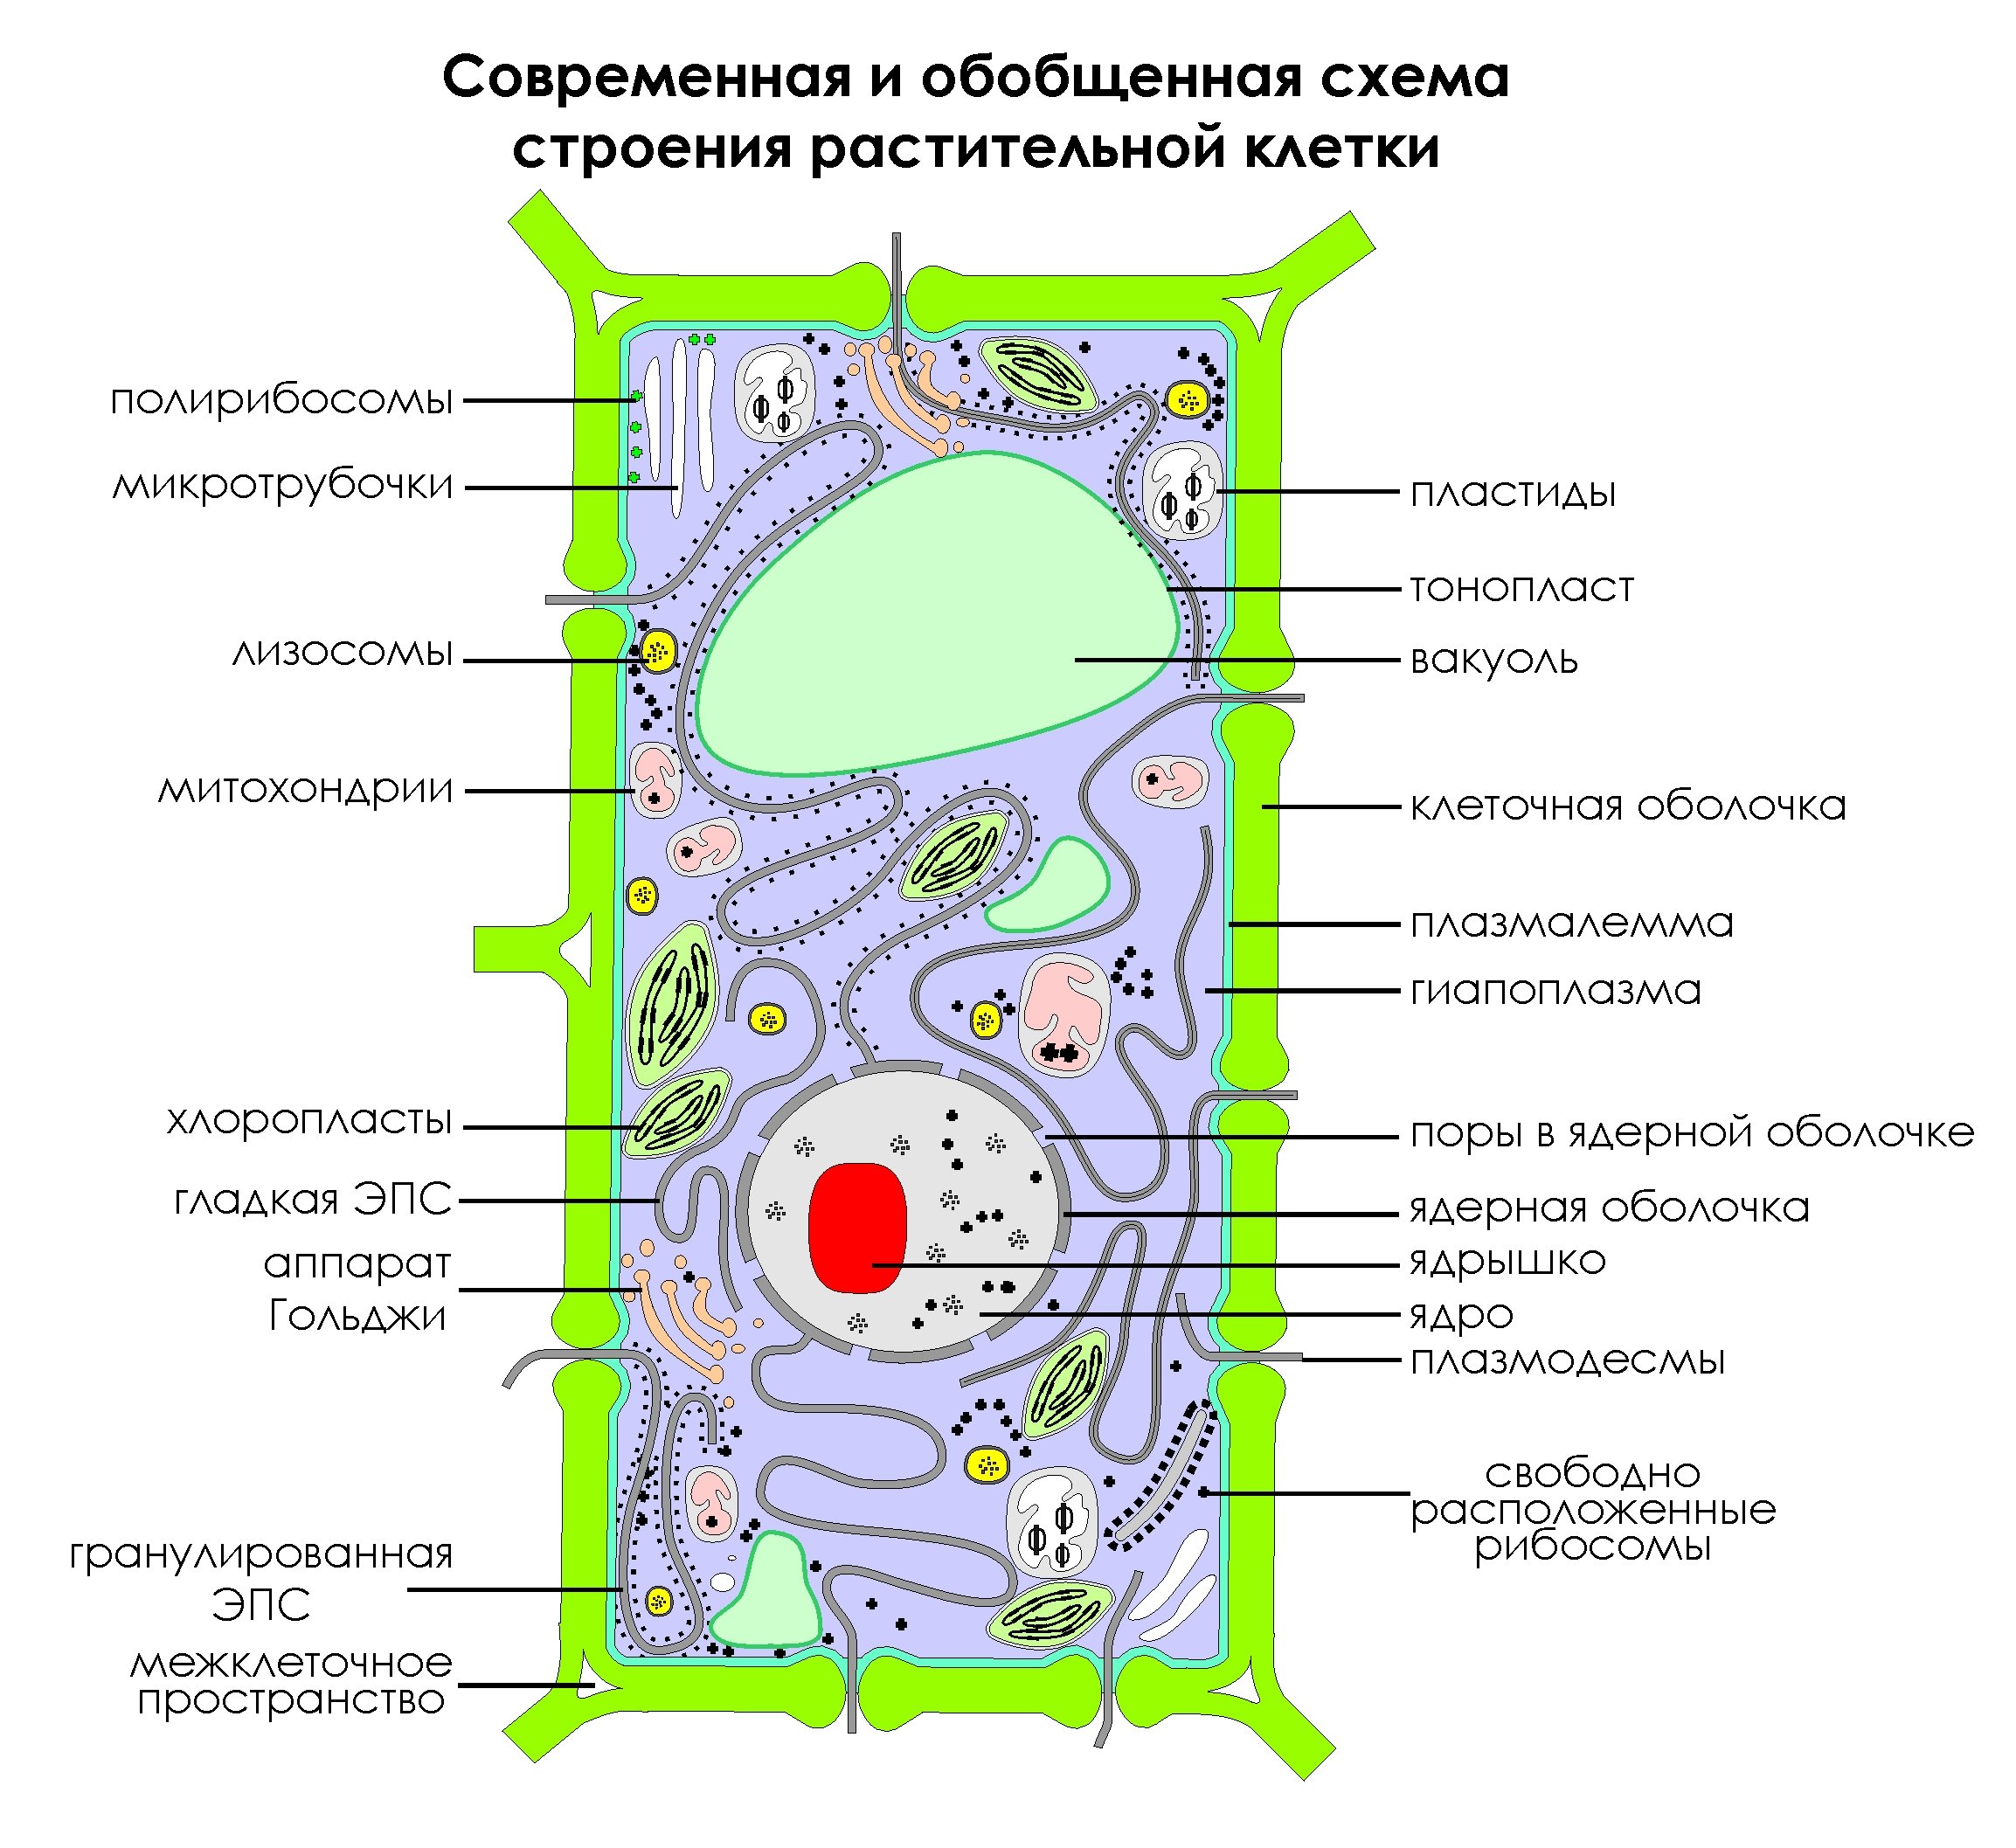 Растительная клетка царство. Схема строения клетки растения. Современная обобщенная схема строения растительной клетки. Изображение растительной клетки схема. Обобщенная схема строения растительной клетки.